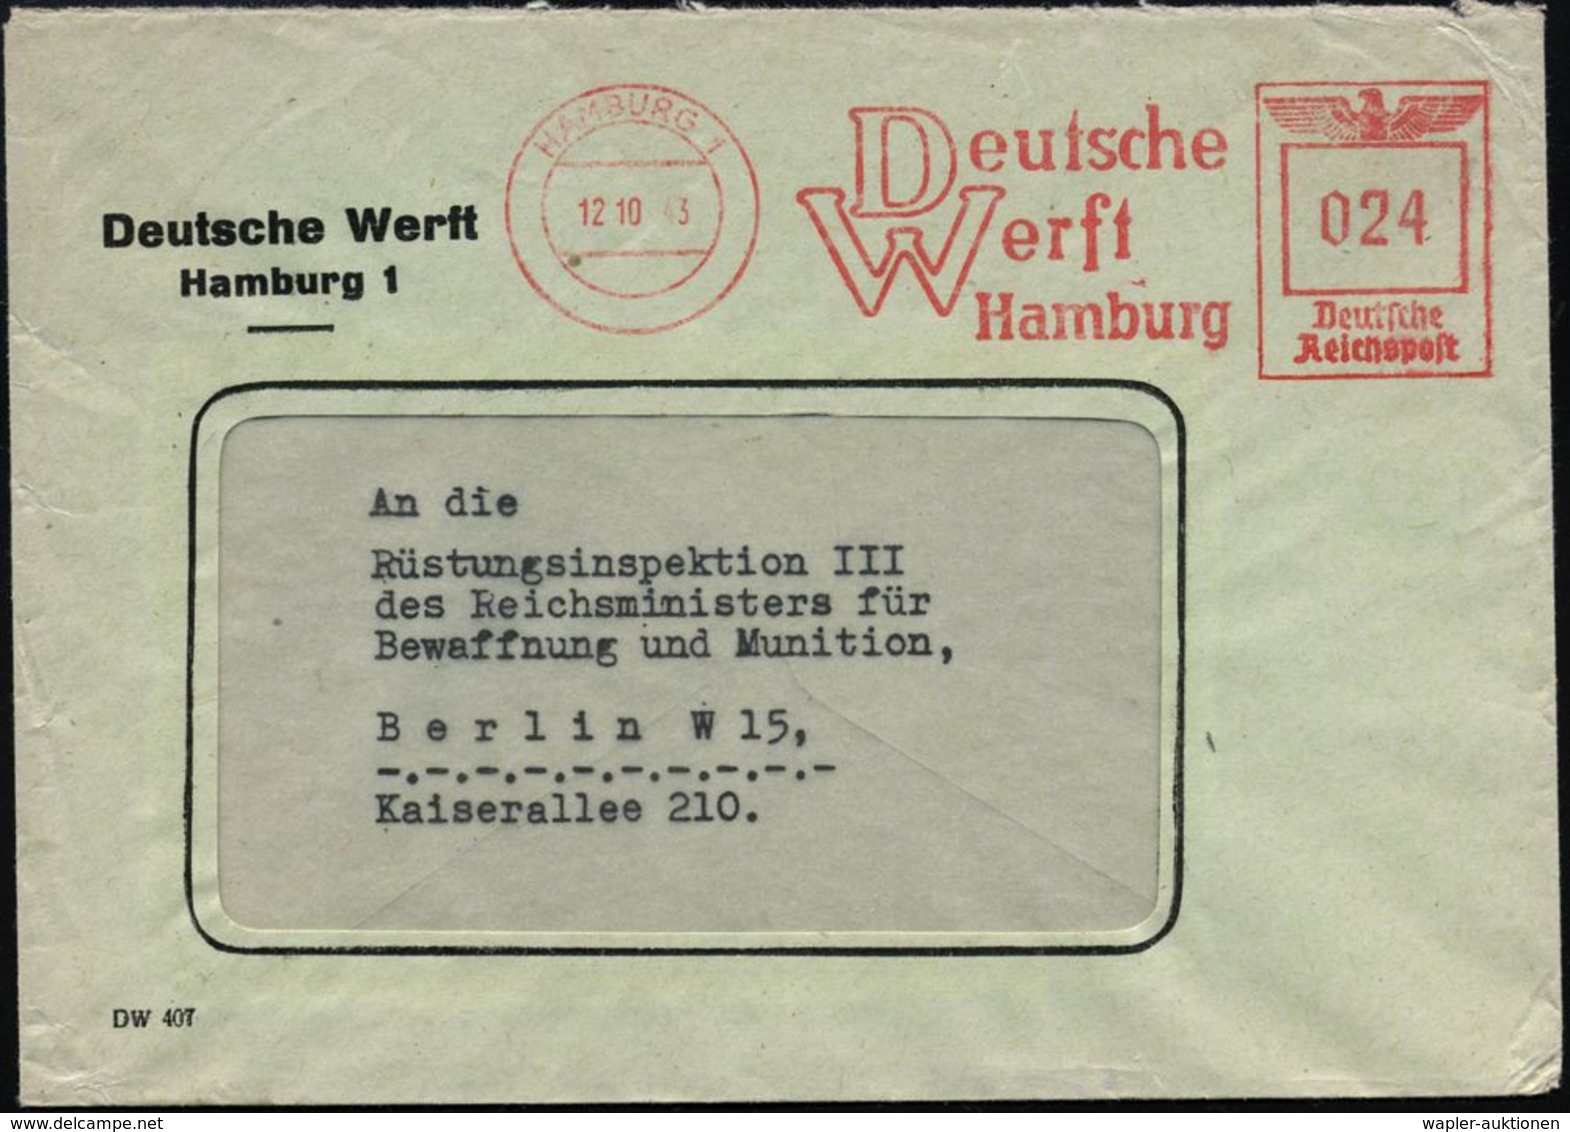 HAMBURG 1/ Deutsche/ Werft 1943 (16.10.) AFS Auf Firmen-Bf. = Kriegsschiffbau, Vor Allem U-Boote (Typen IX C, IX C/40, X - Maritiem